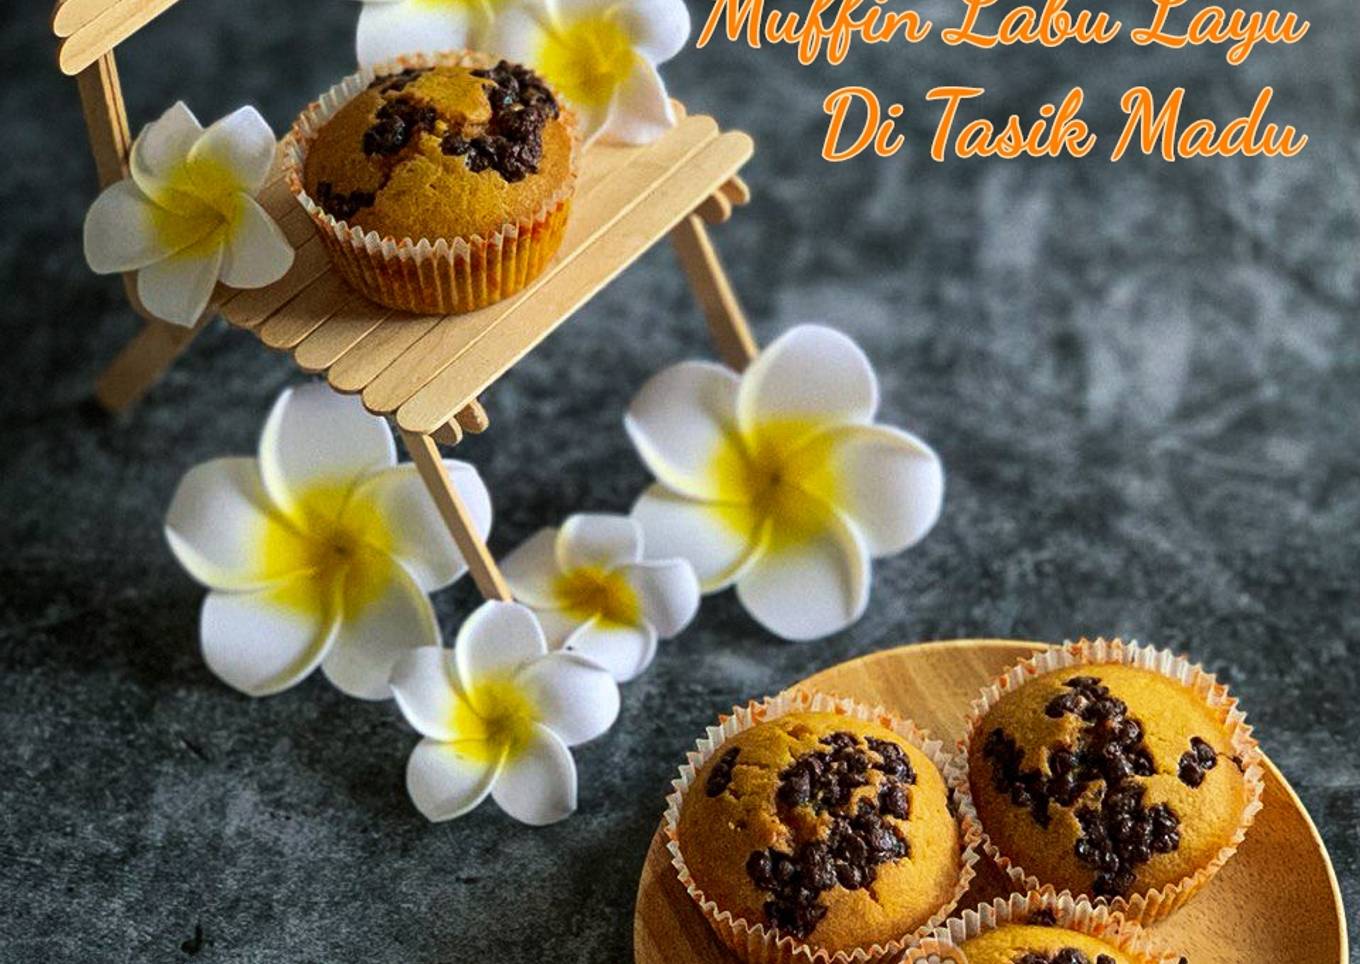 Resepi Muffin Labu Layu Di Tasik Madu yang Sempurna dan Mudah